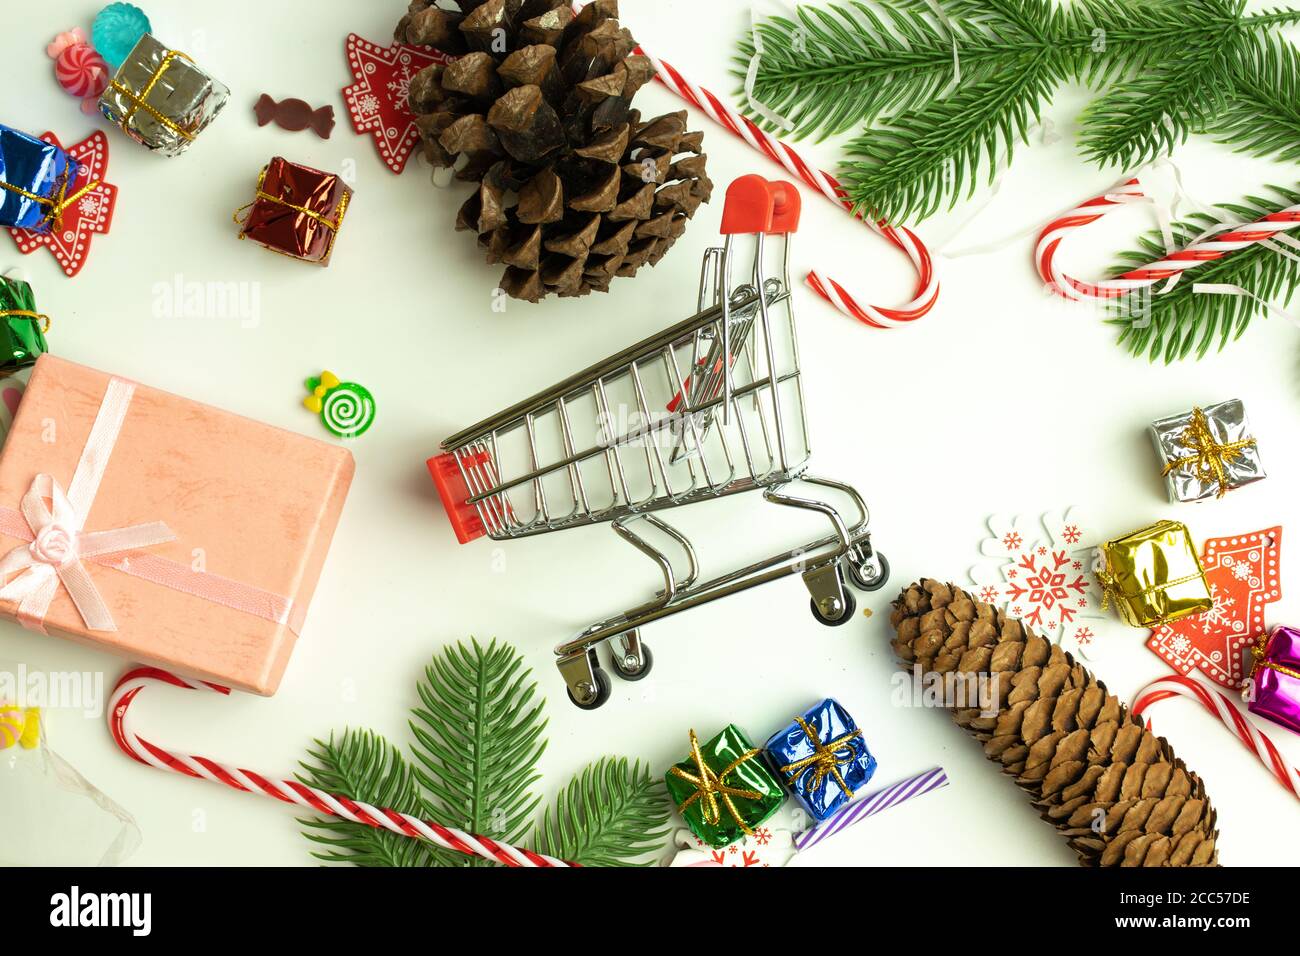 Warenkorb in der Mitte der Weihnachtsdekoration auf weißem Hintergrund. Flach liegend. Kauf von Geschenken auf Neujahr Weihnachtskonzept Stockfoto